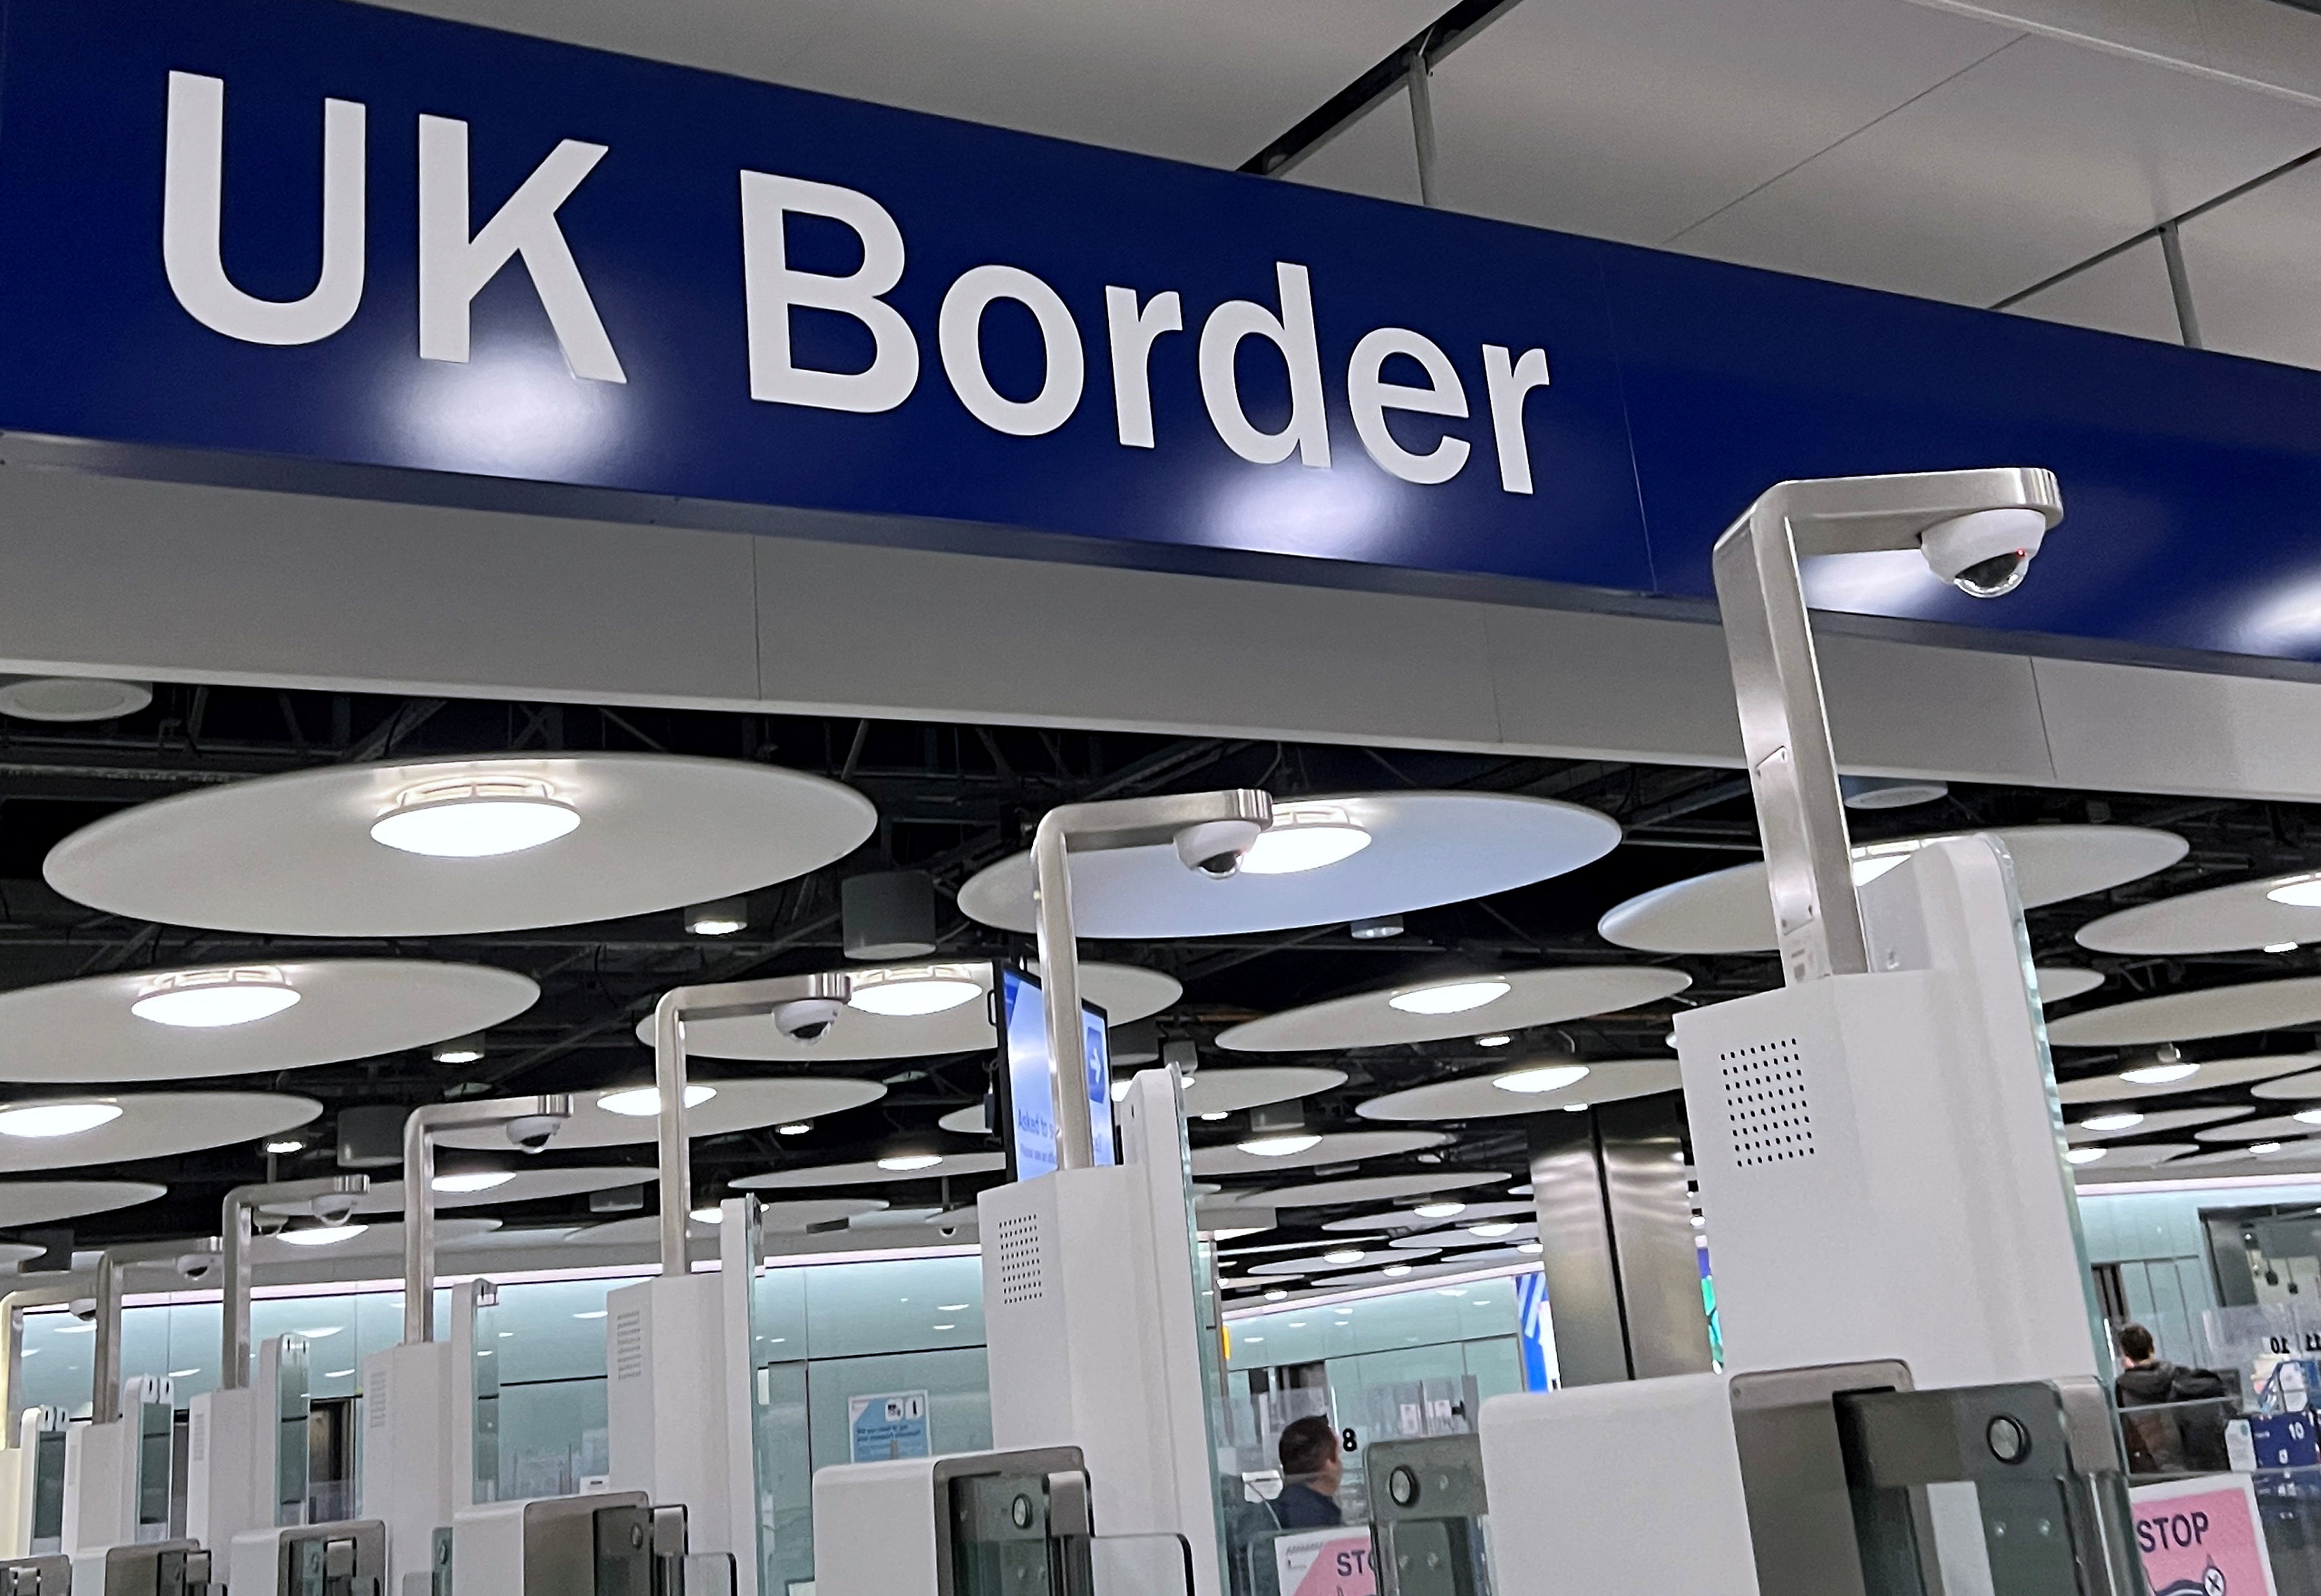 लंदन हीथ्रो हवाई अड्डे पर टर्मिनल 5 के पासपोर्ट नियंत्रण क्षेत्र में एक संकेत है